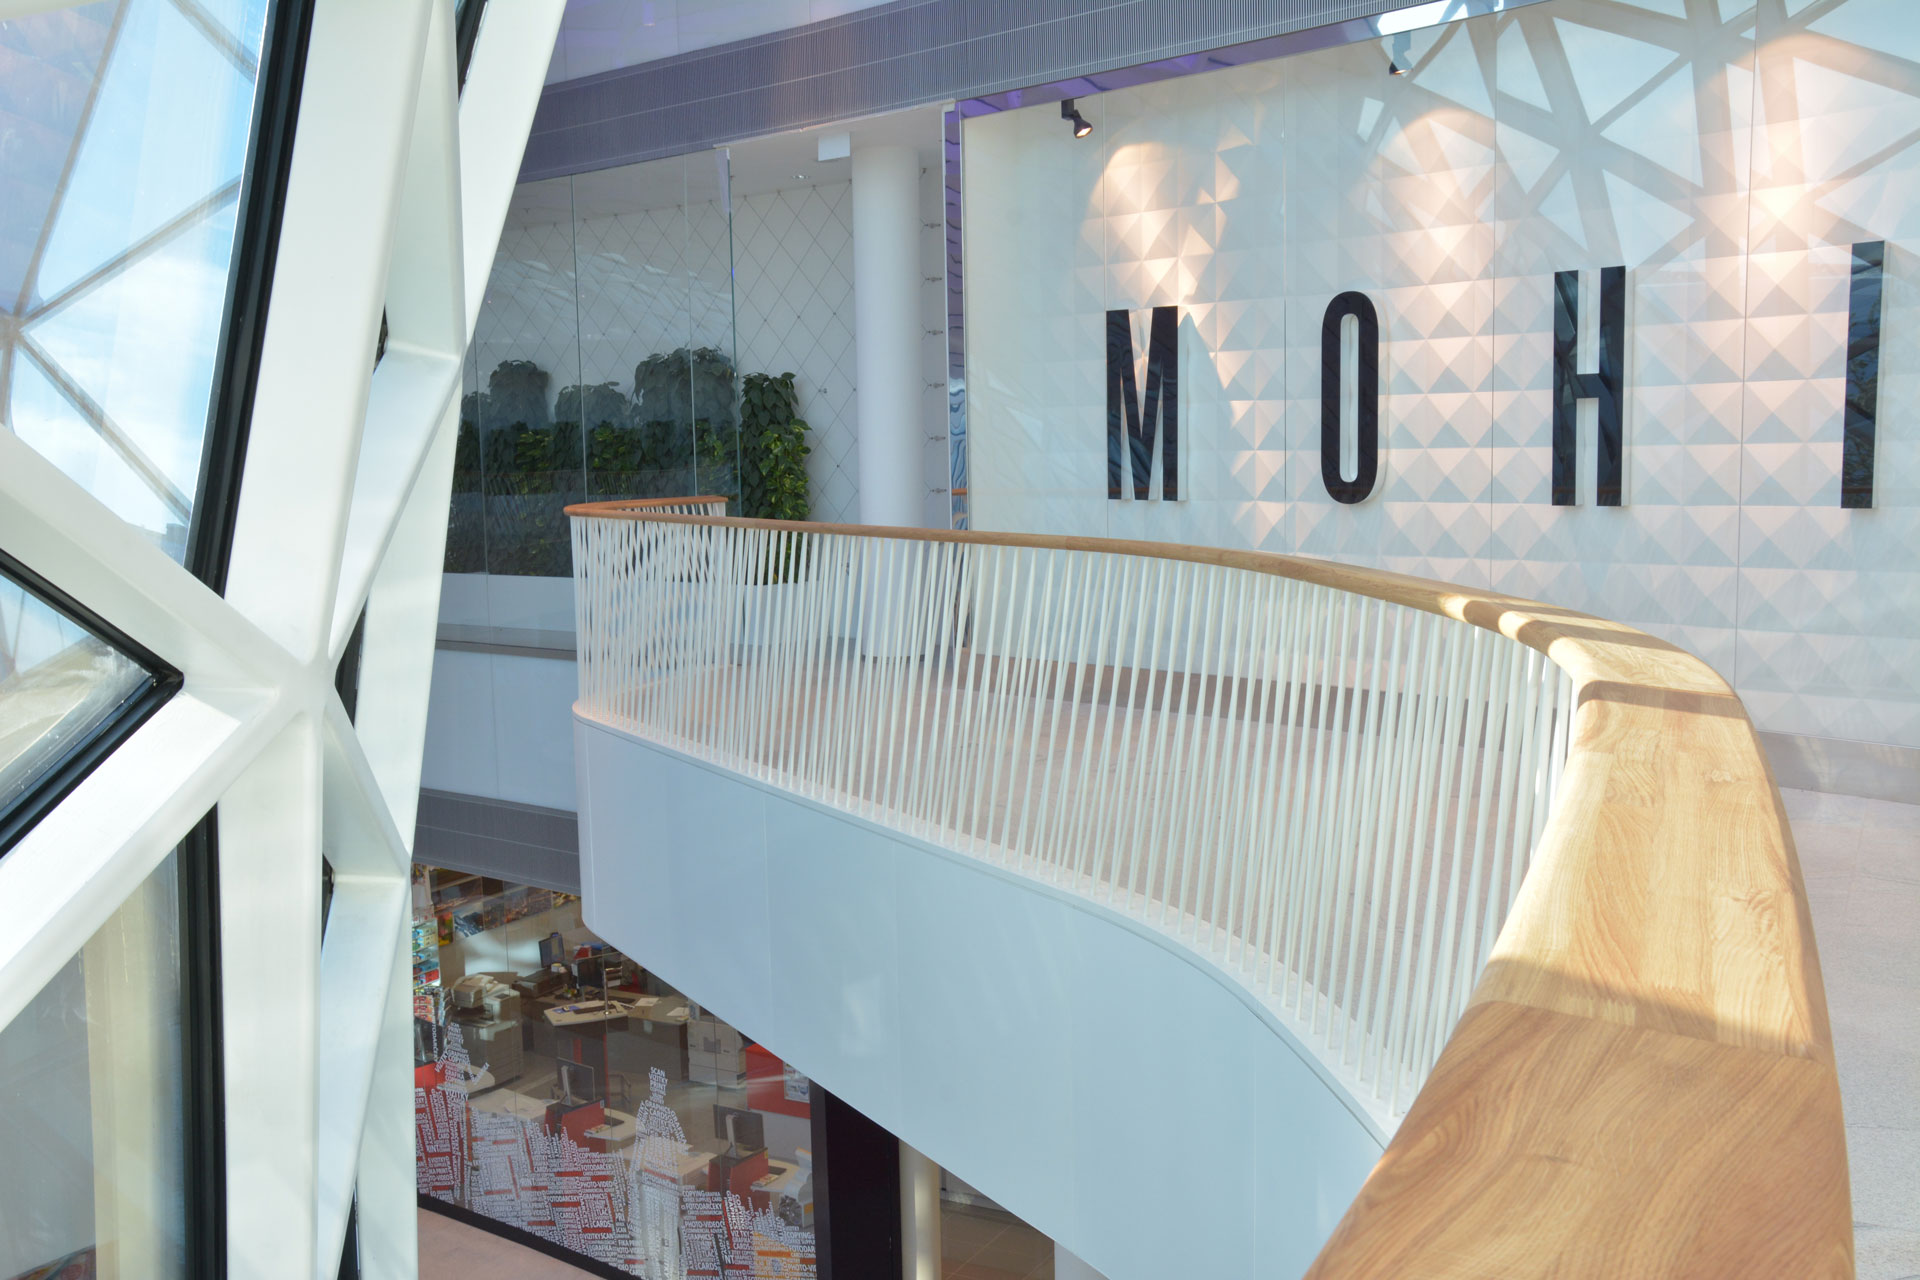 EFF - Bory Mall zábradlí - Dřevěné madlo, kovové zábradlí, alukobondový obklad, LED podsvícení